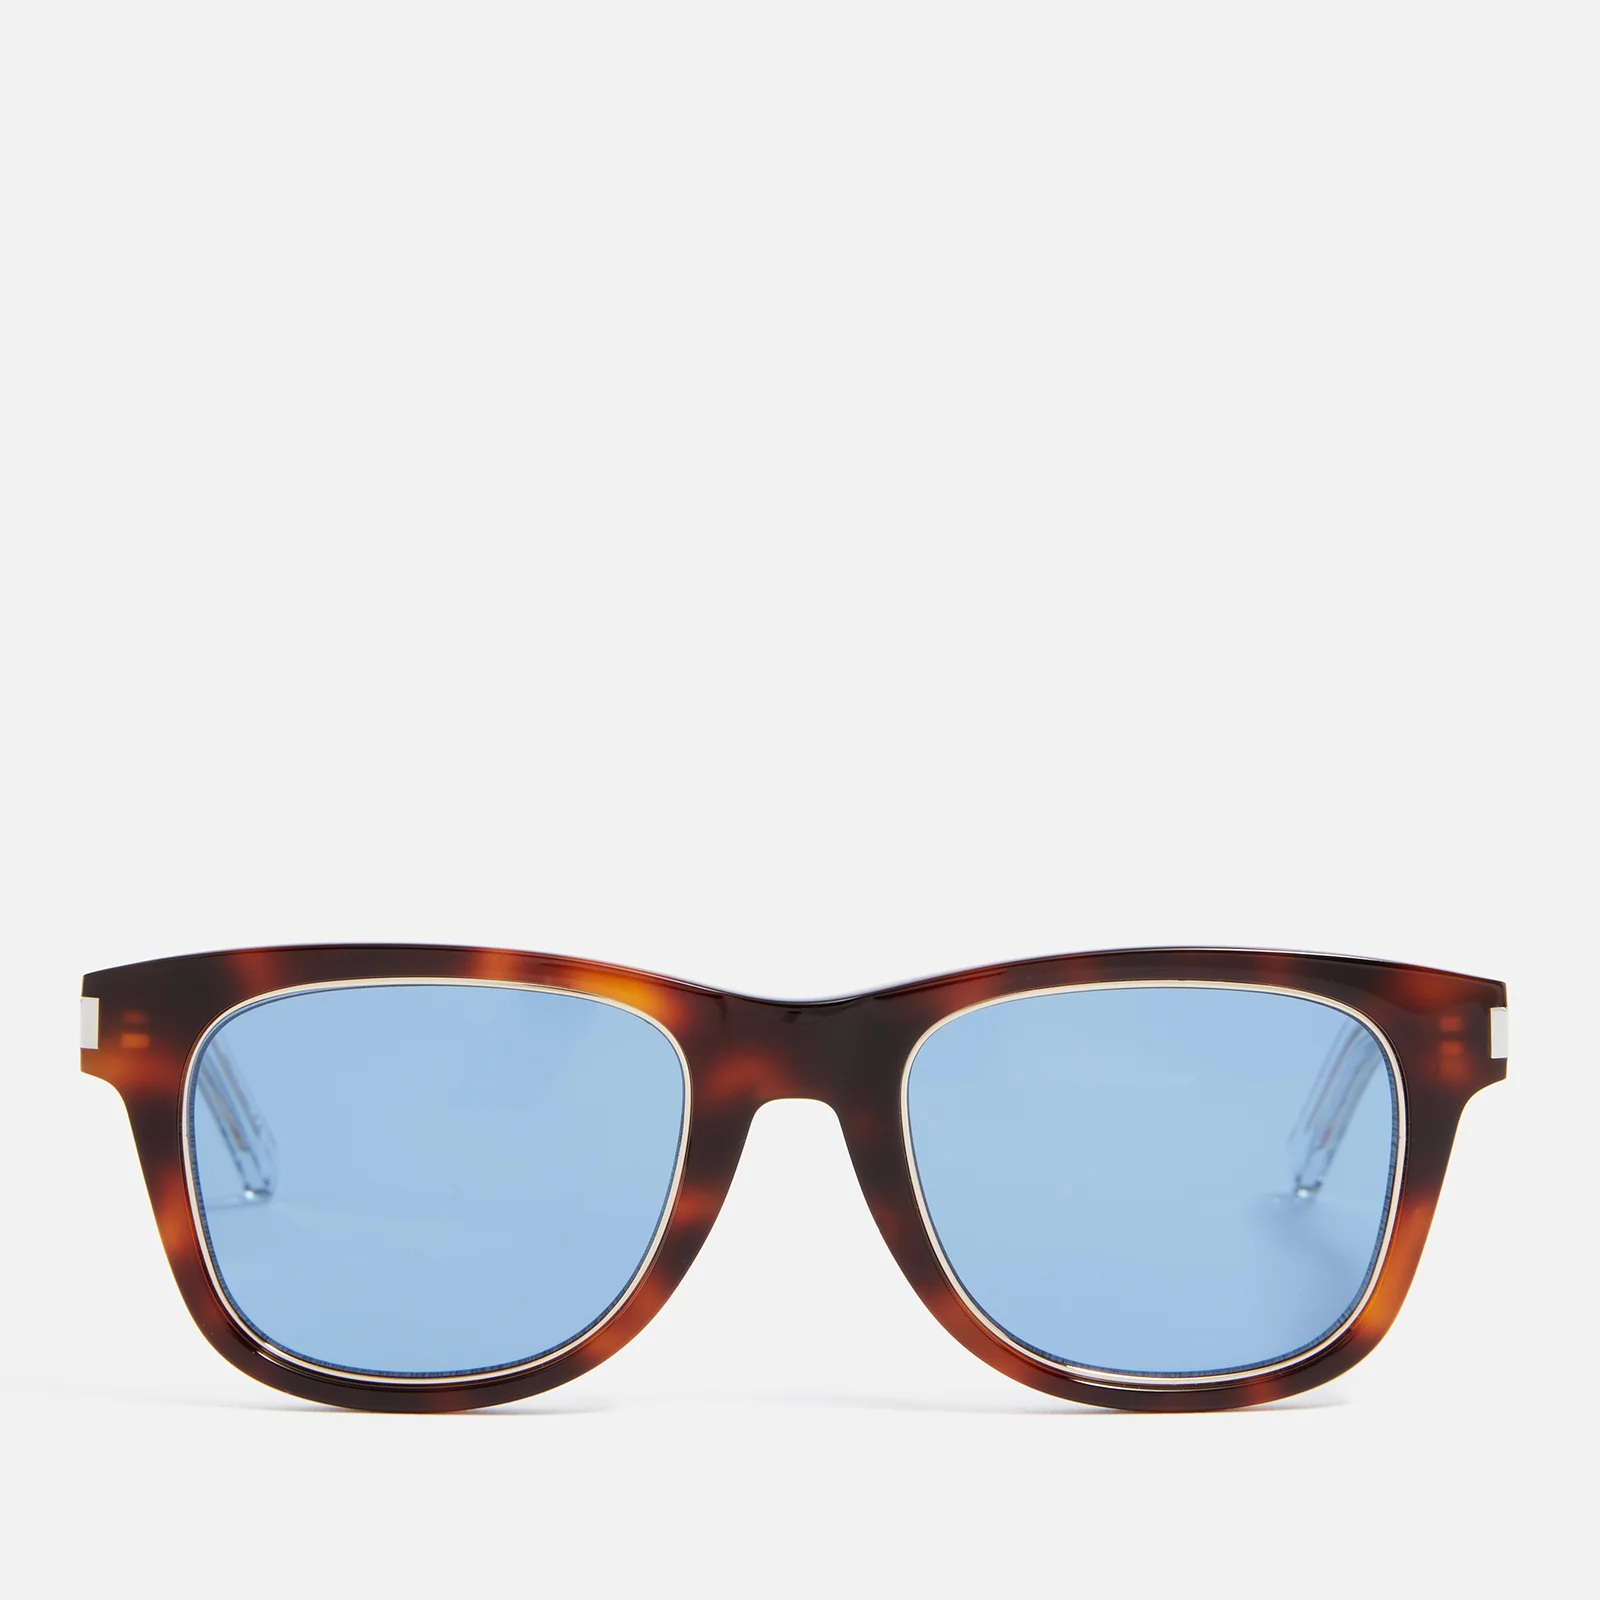 Saint Laurent D-Frame Acetate Sunglasses Image 1